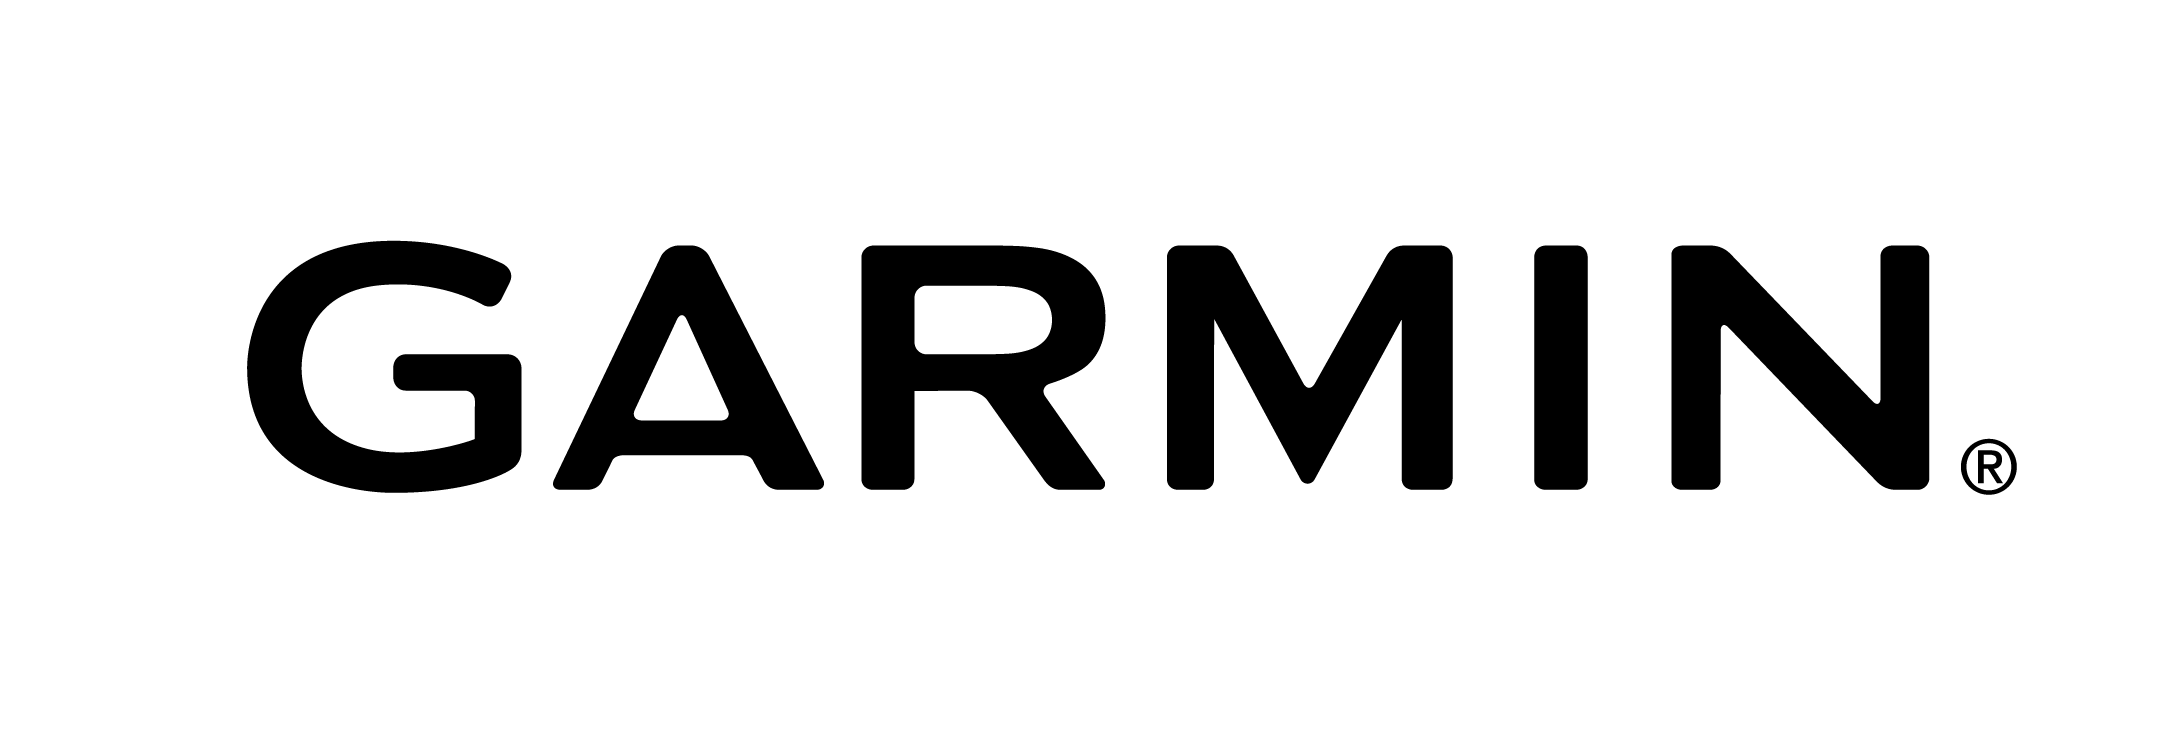 Garmin Logo PNG - 178465